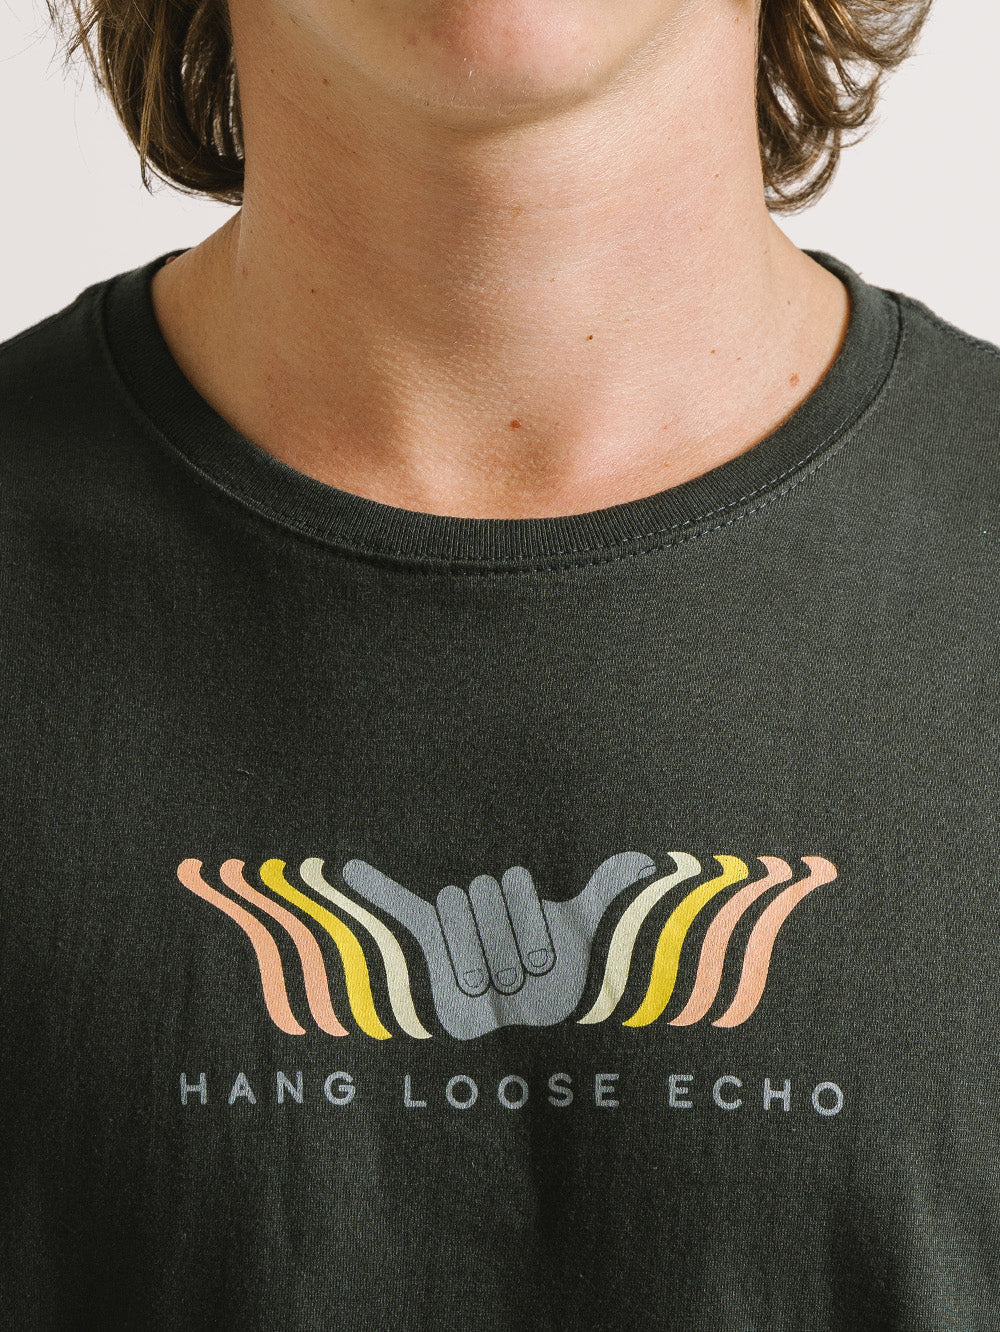 Camiseta Hang Loose Echo Chumbo